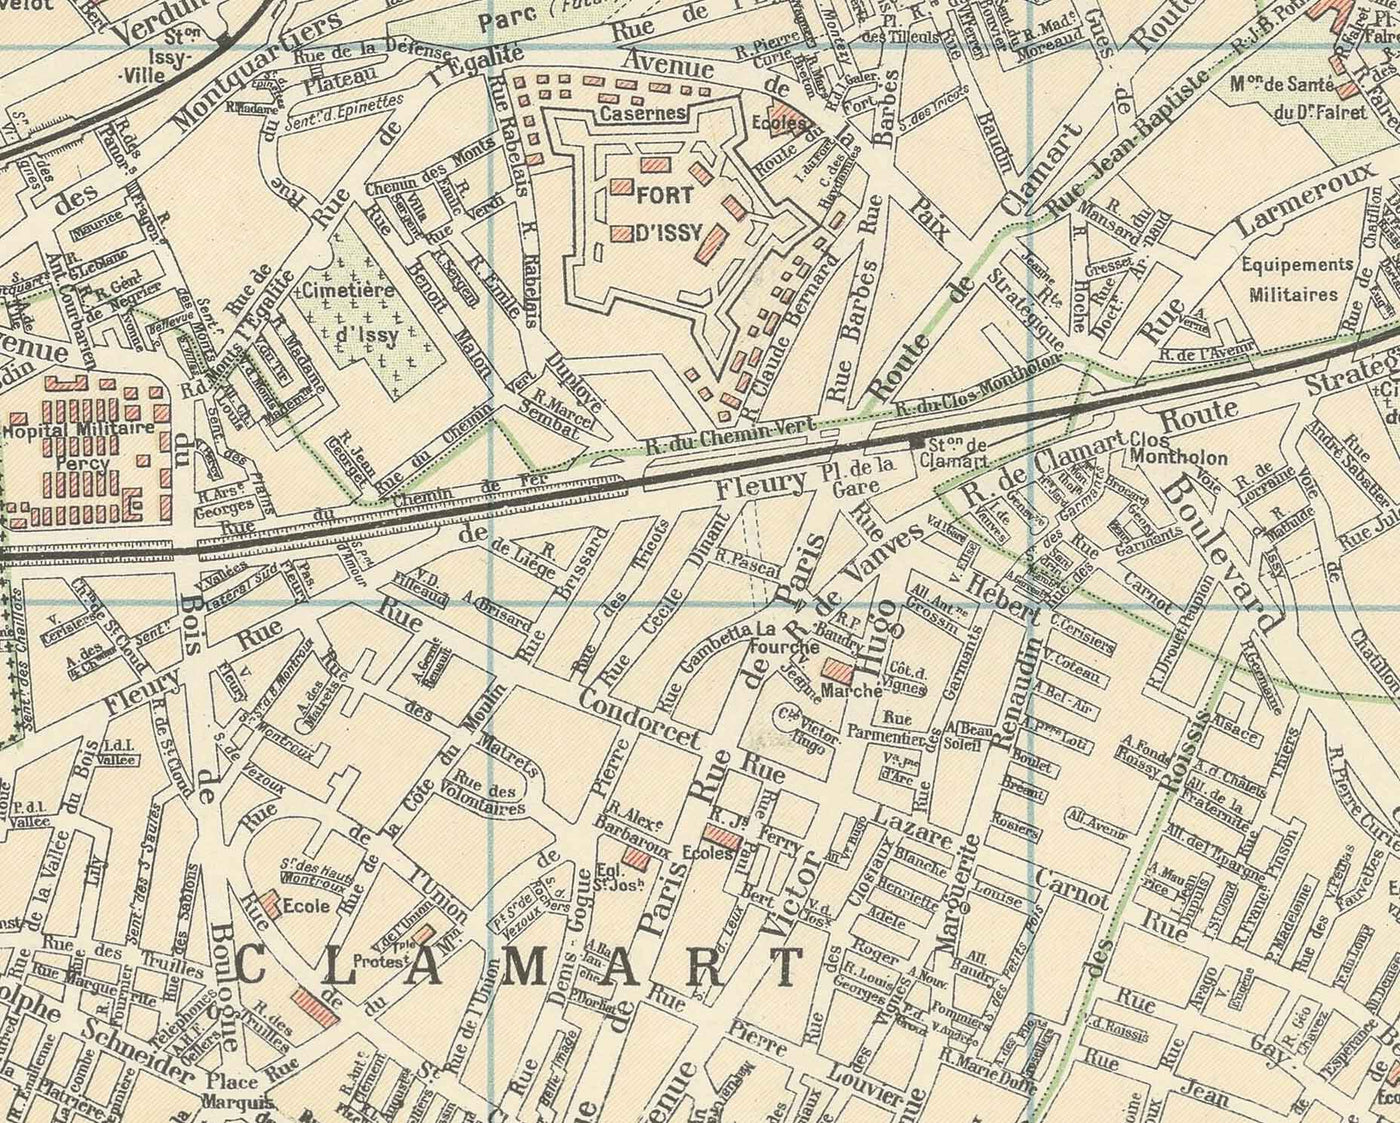 Antiguo mapa del metro de París y sus puntos de referencia, 1934 por Gaillac-Monrocq - 13 líneas, Arco del Triunfo, mapa turístico de la ciudad del siglo XX